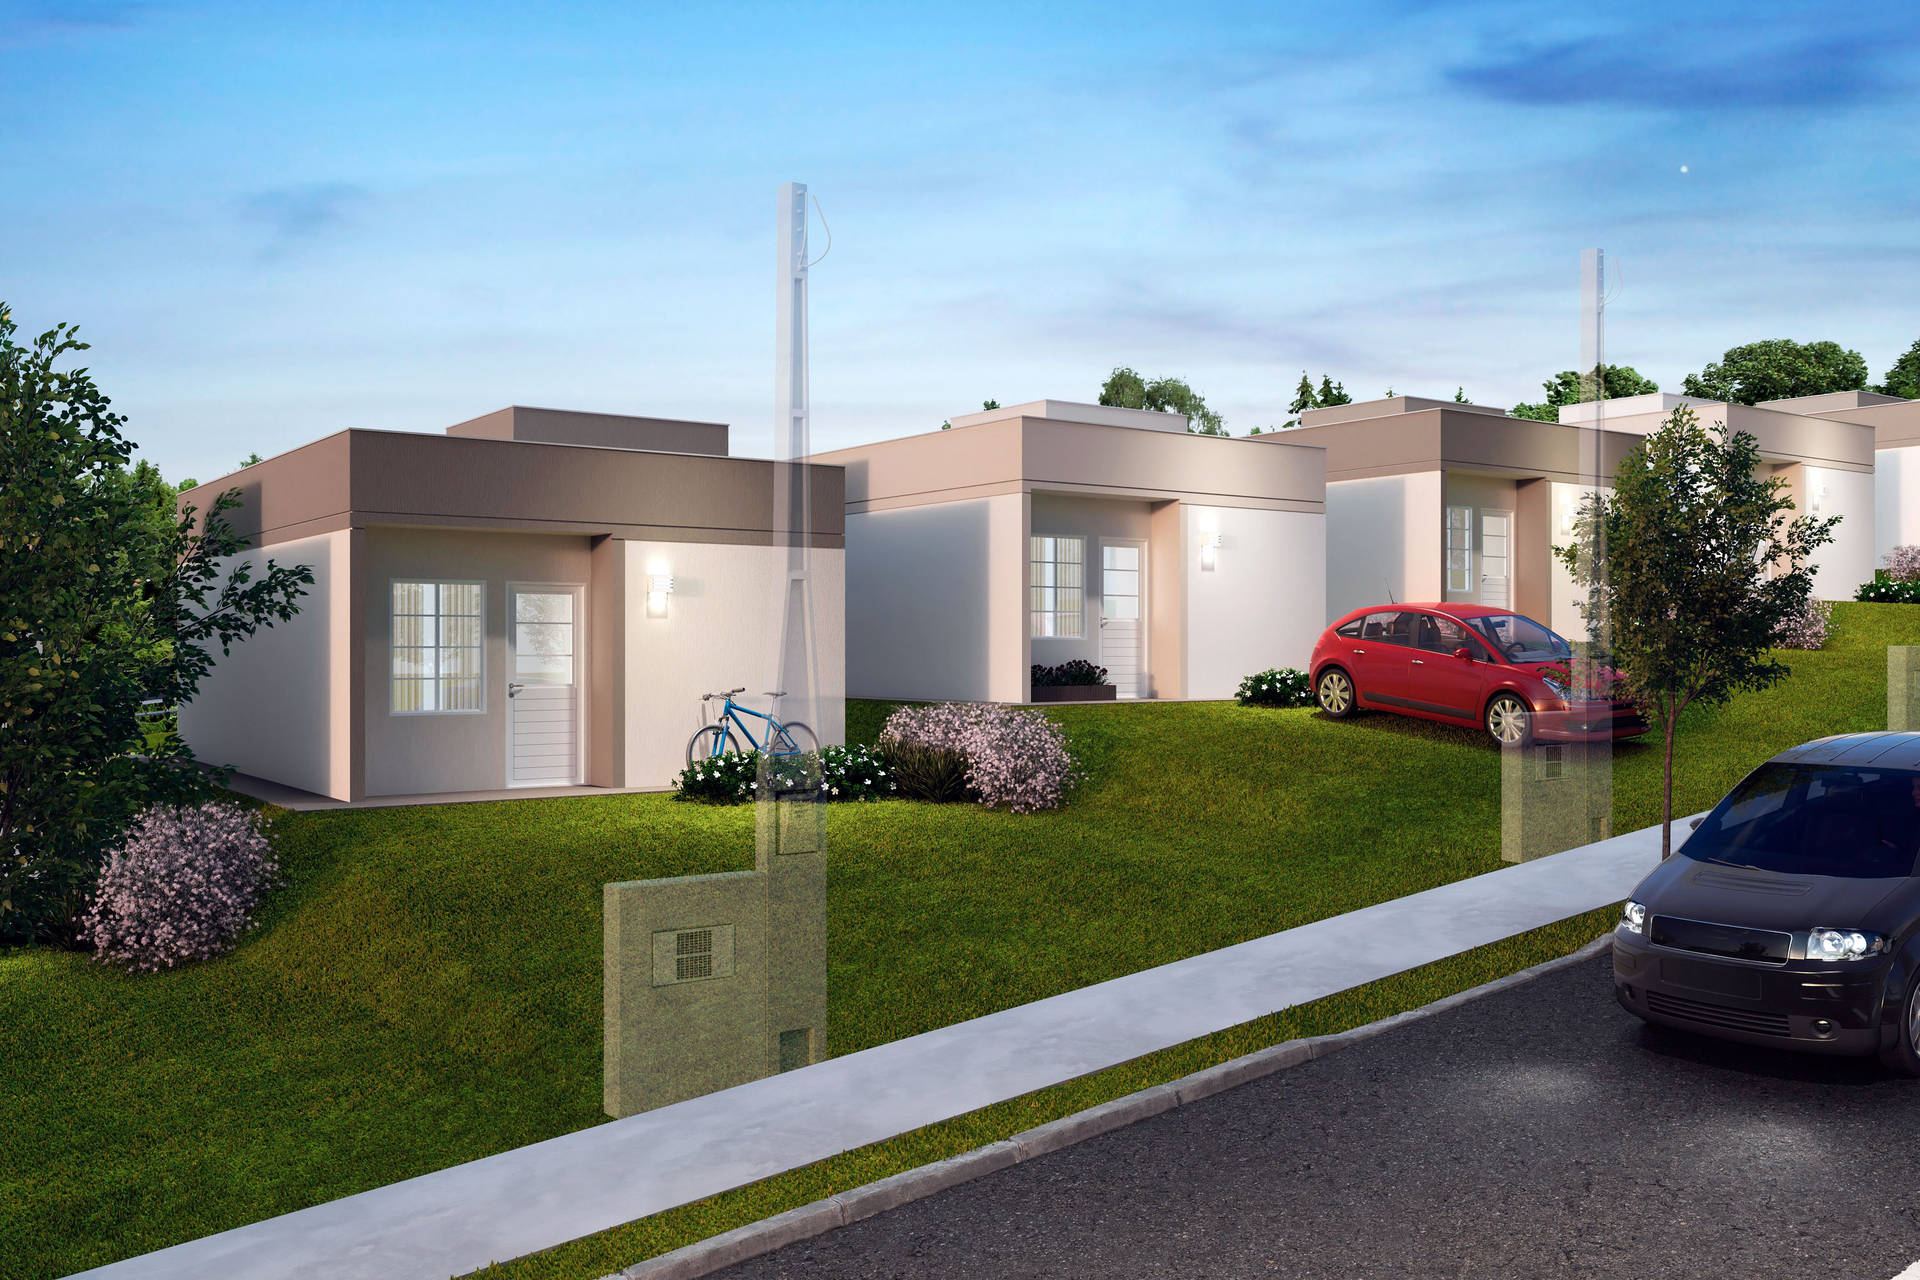 Imagem referente a Ponta Grossa vai receber um novo bairro planejado com 408 casas